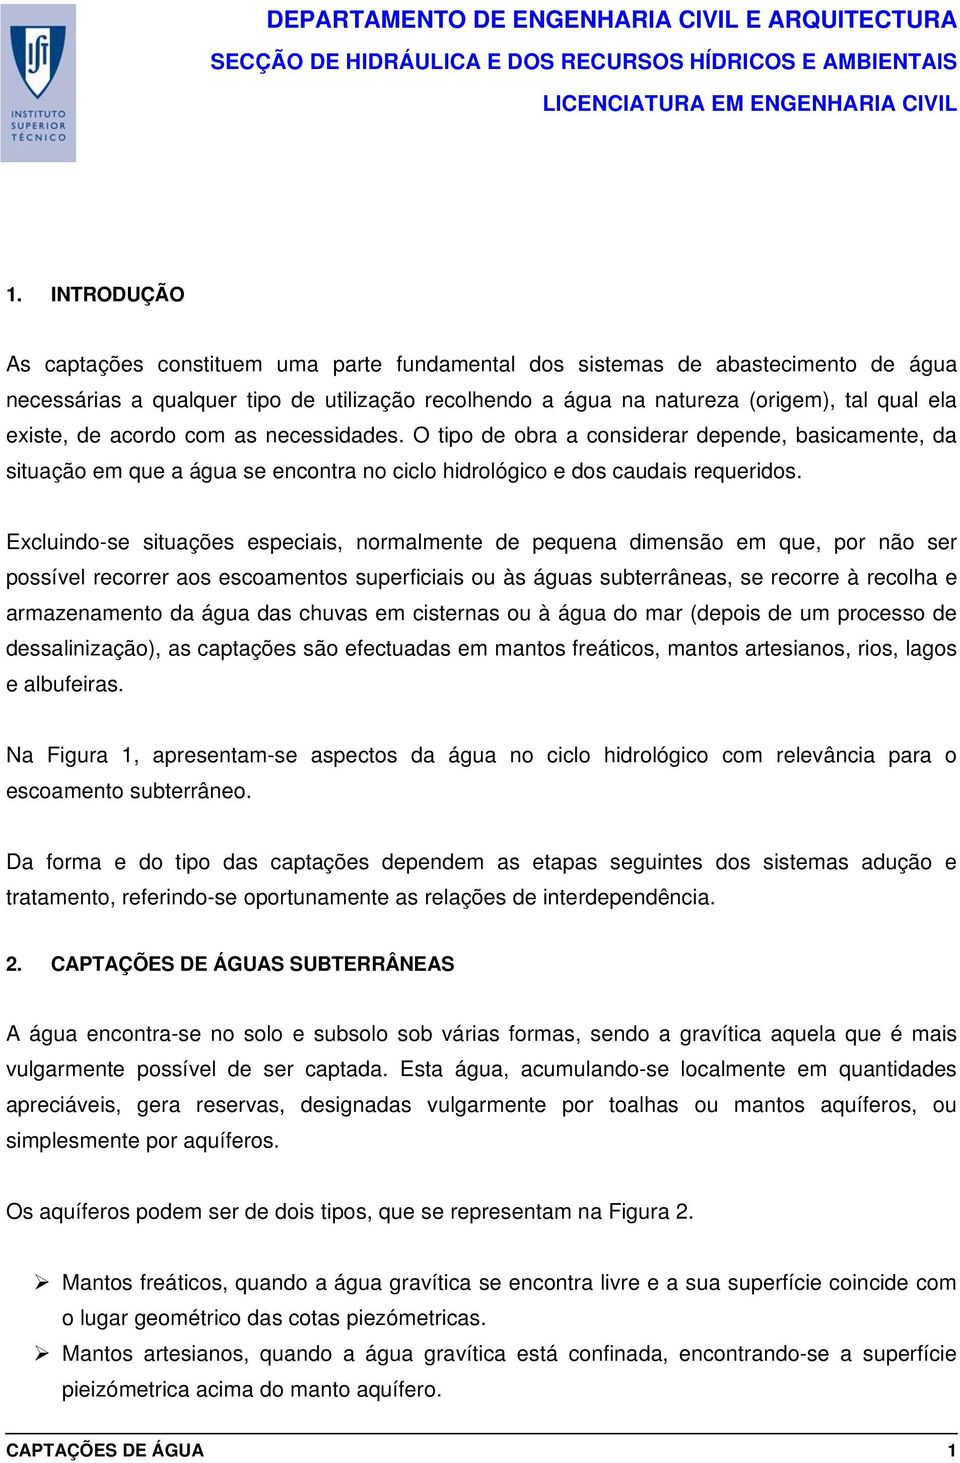 SANEAMENTO AMBIENTAL I CAPTAÇÕES DE ÁGUA DEPARTAMENTO DE ENGENHARIA CIVIL E  ARQUITECTURA EDUARDO RIBEIRO DE SOUSA - PDF Free Download